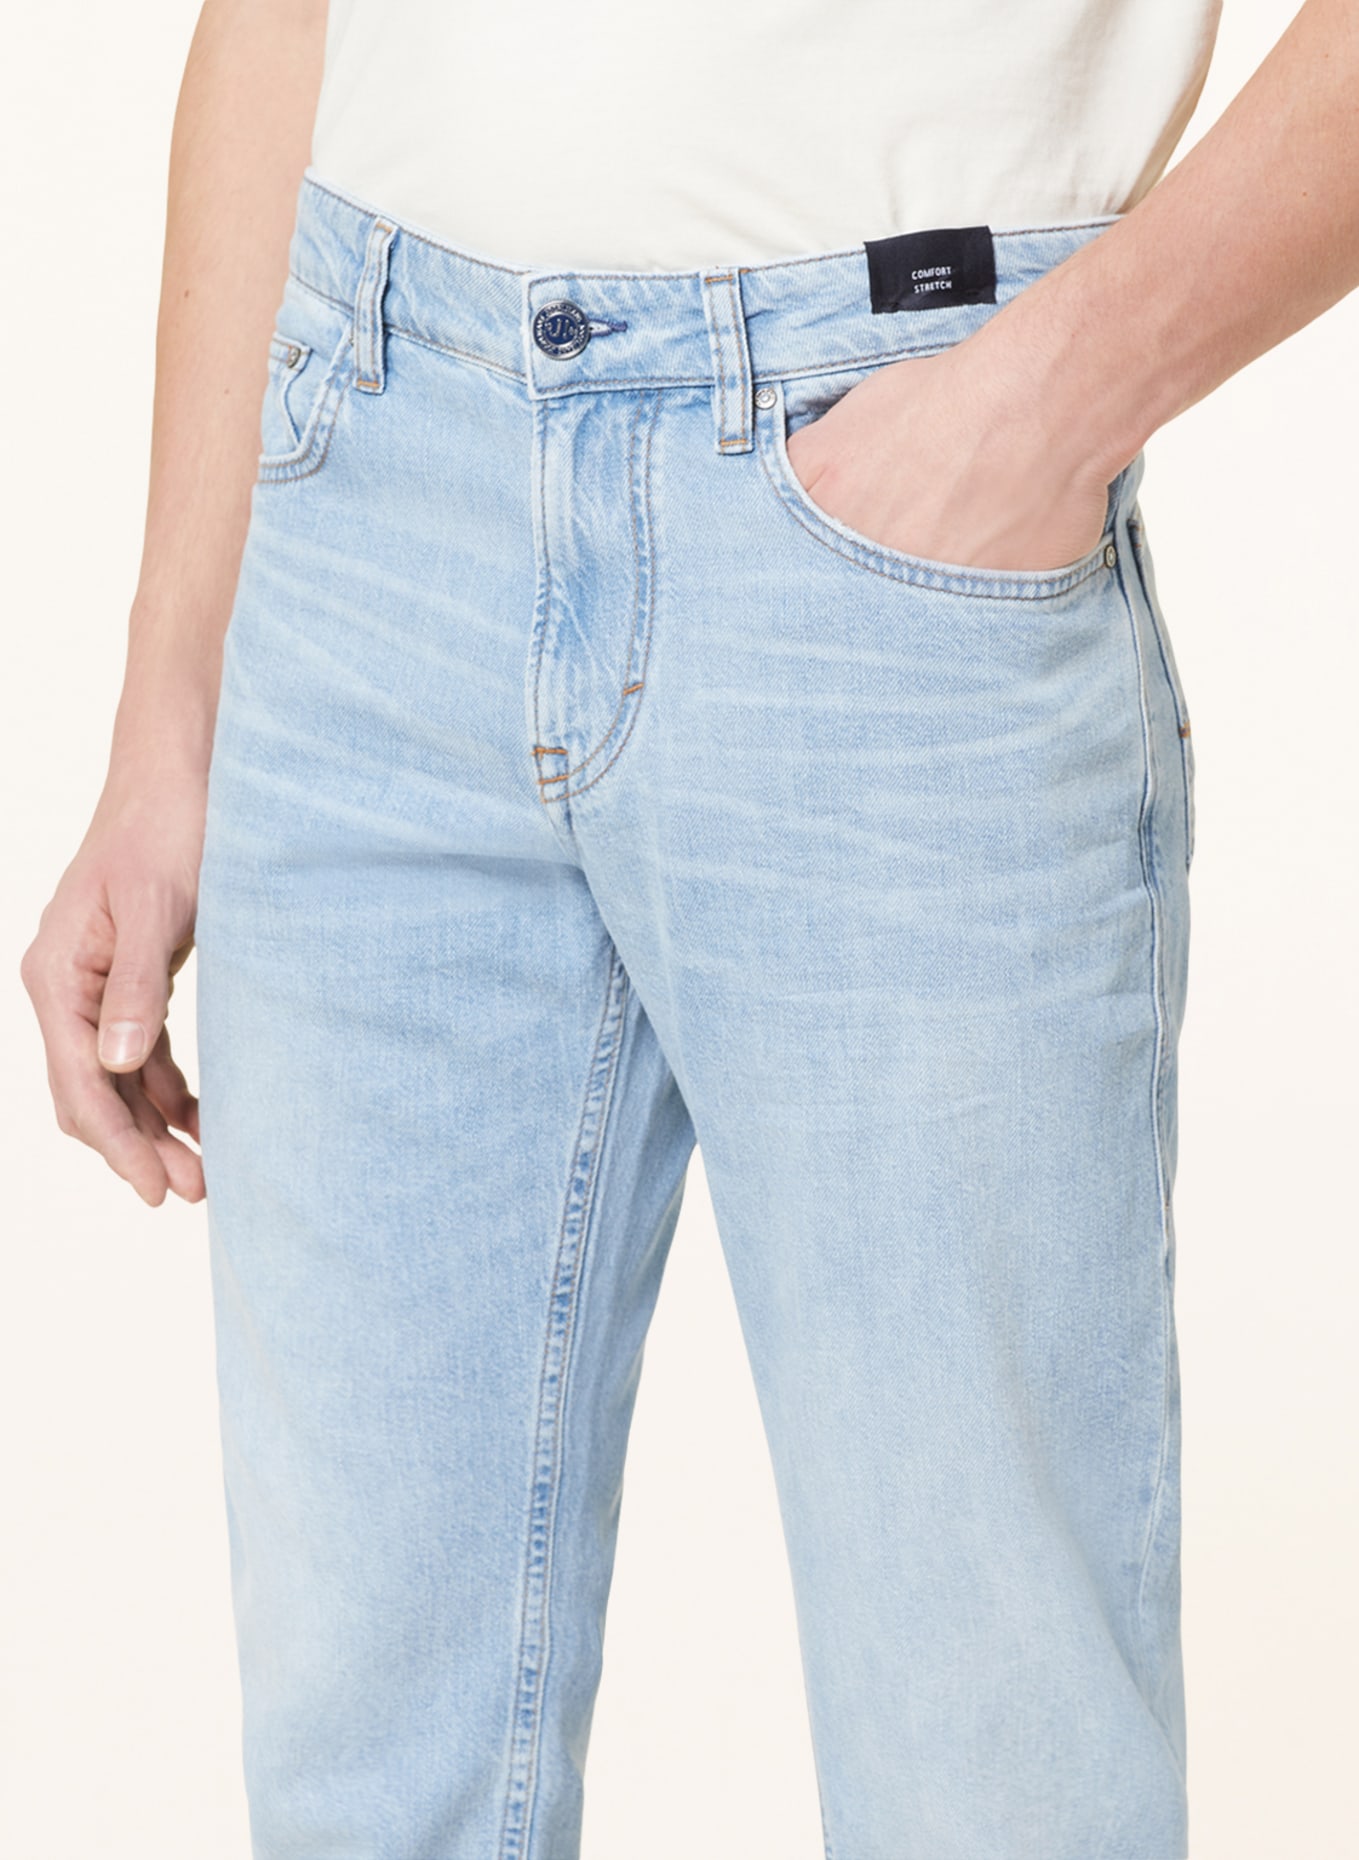 JOOP! JEANS Jeans MITCH modern fit, Color: 451 Lt/Pastel Blue             451 (Image 5)